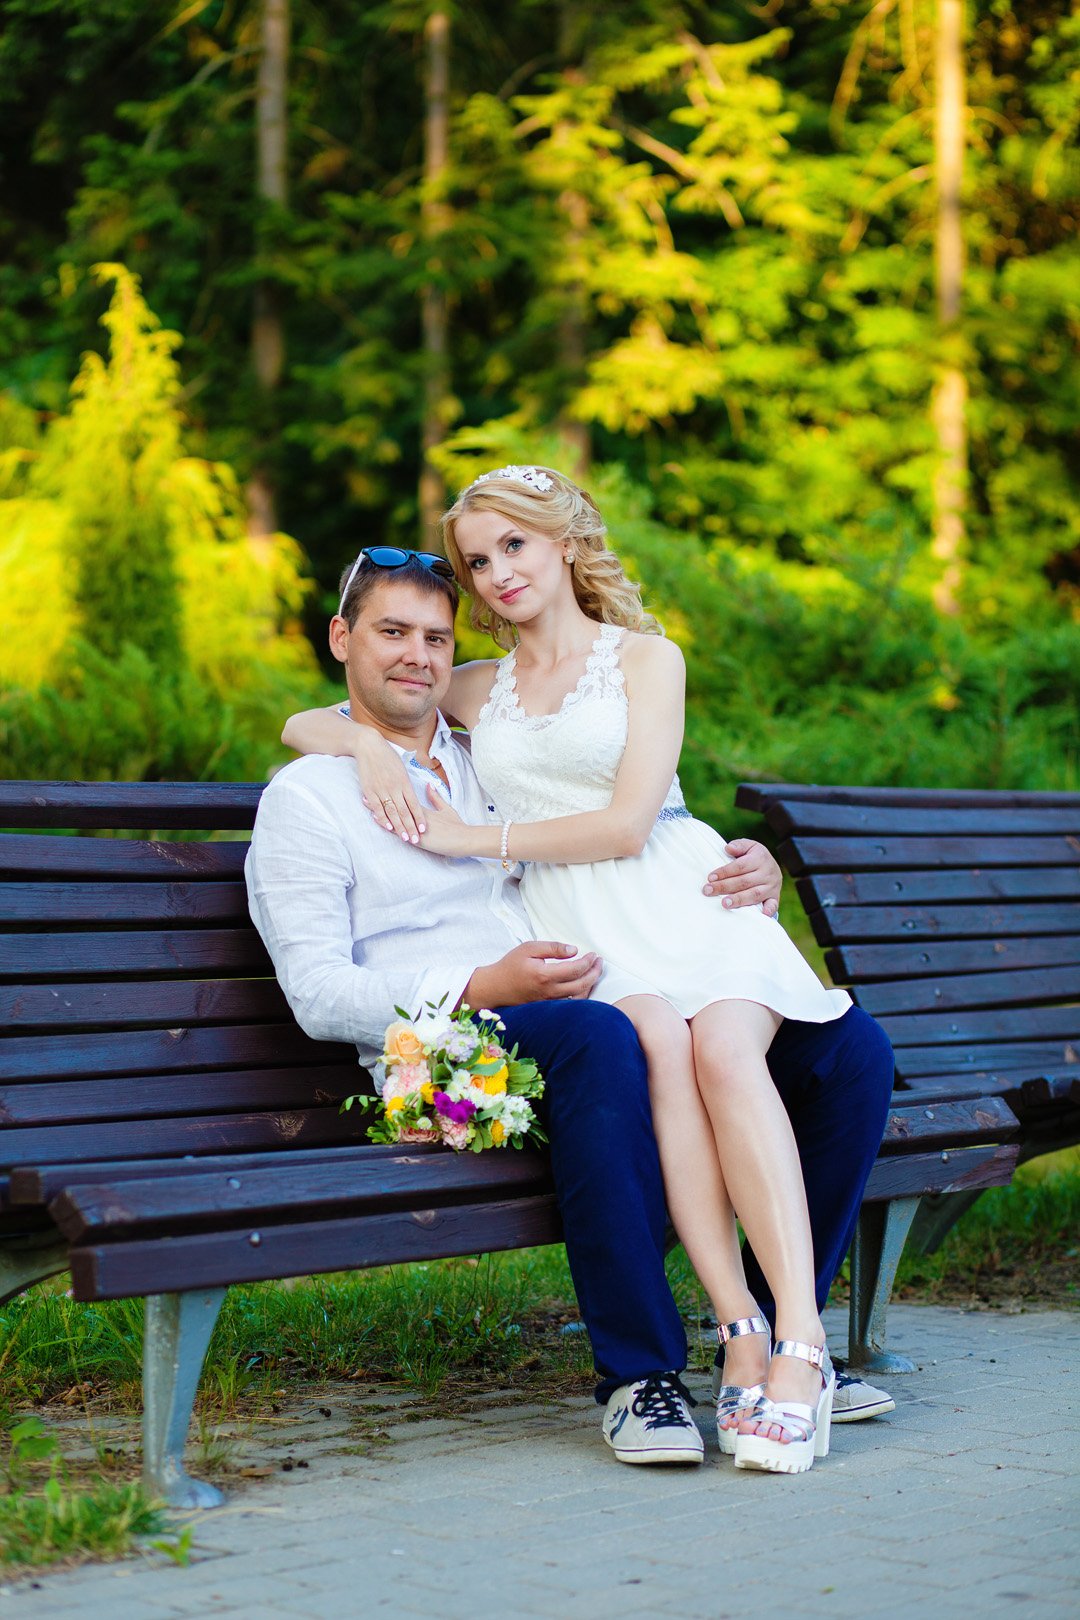 Love-story съемка на скамейке в ботаническом саду | Свадебный фотограф в Минске, Александр Морозов